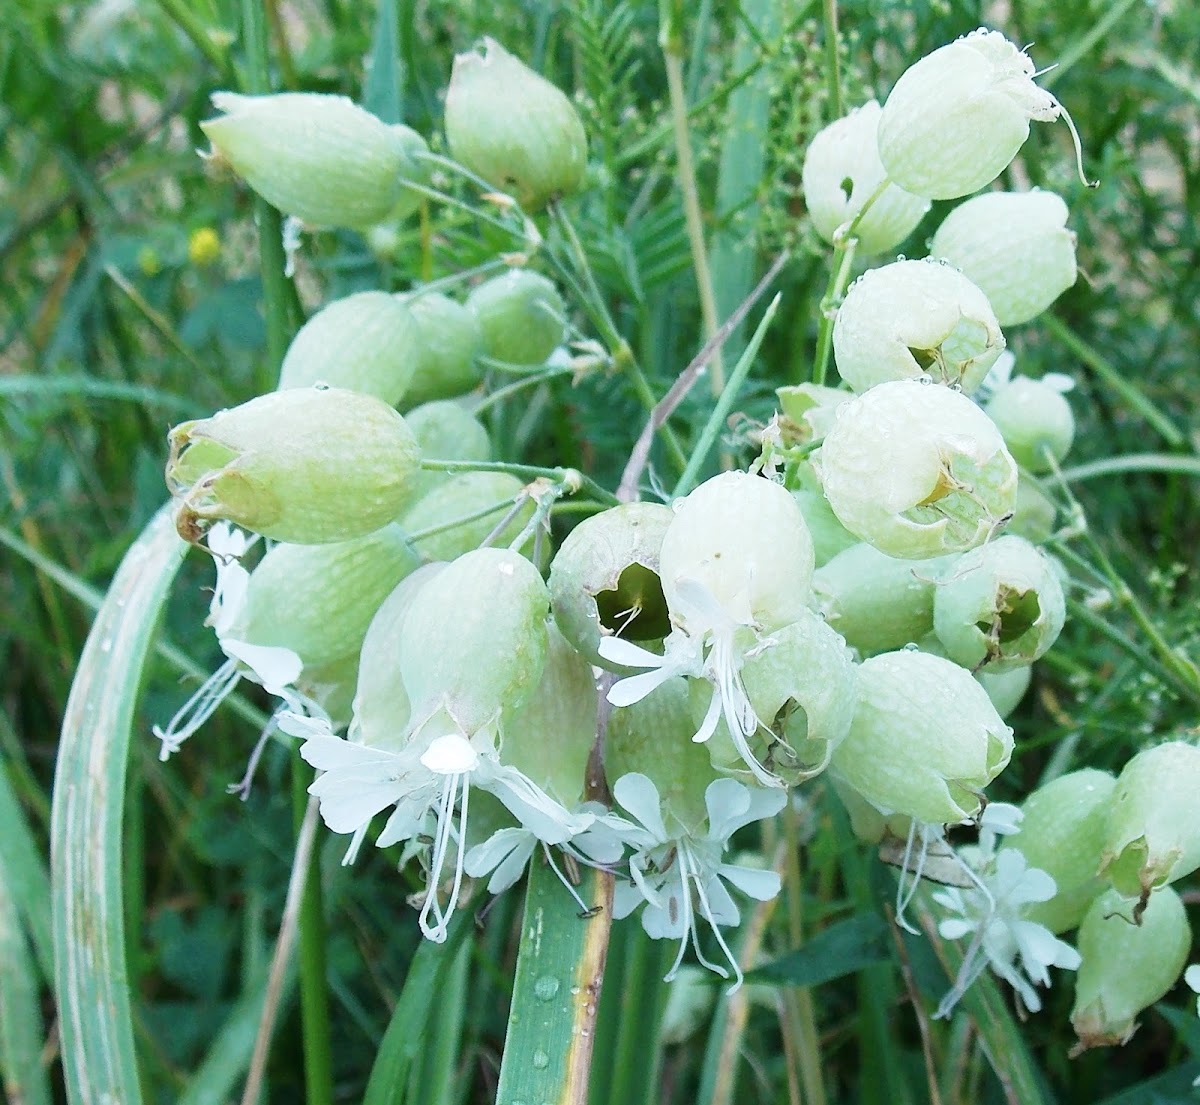 Bladder Campion (Wildflower)